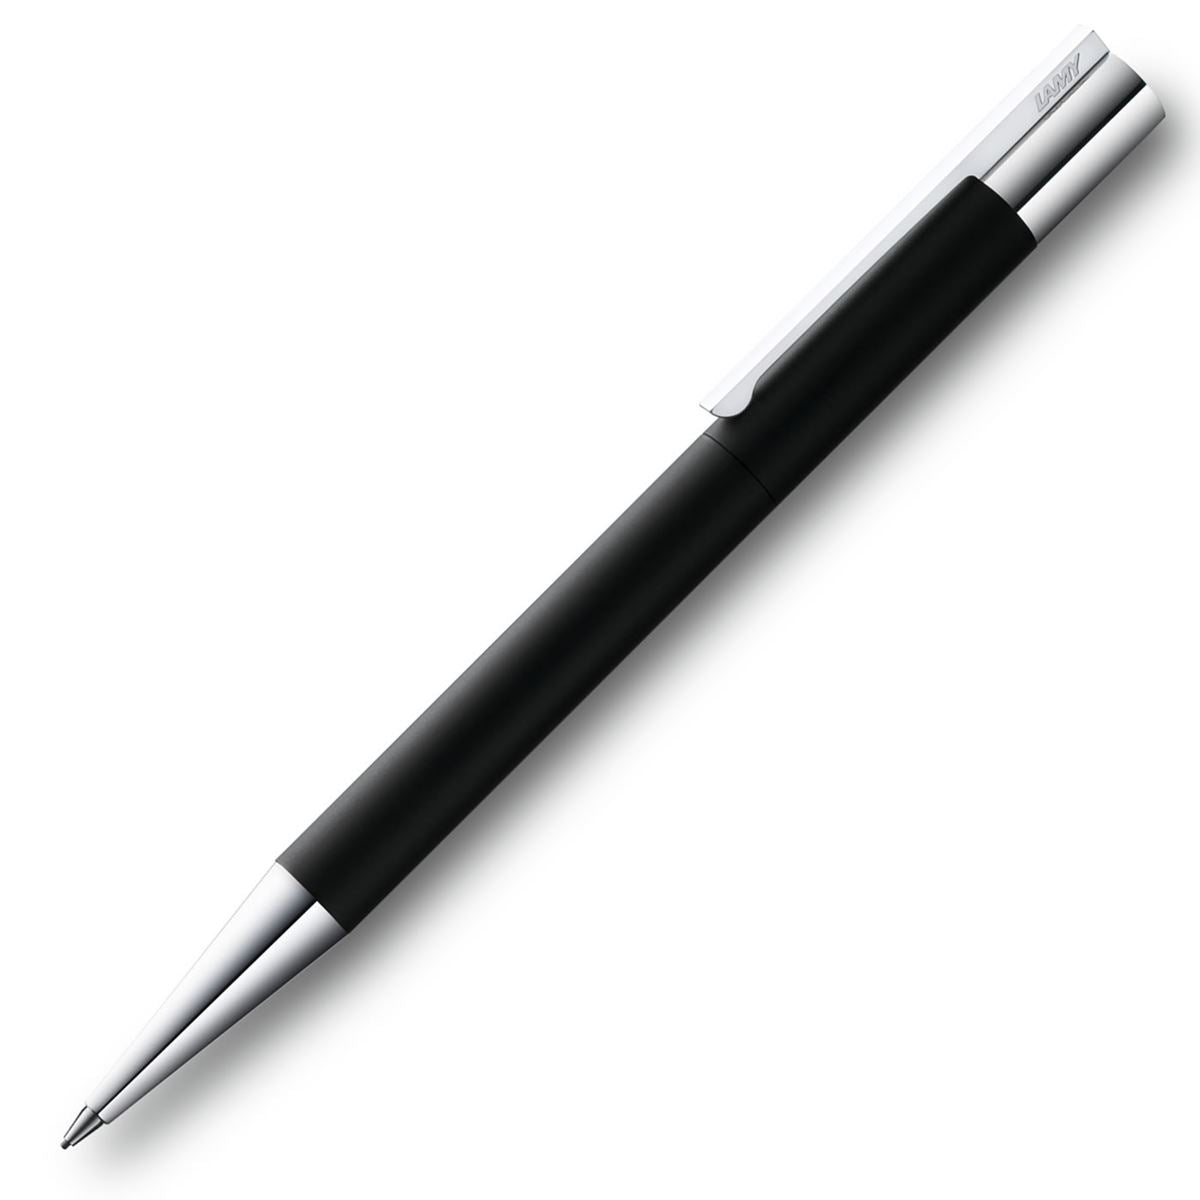 Lamy Scala Black Ballpoint Pen